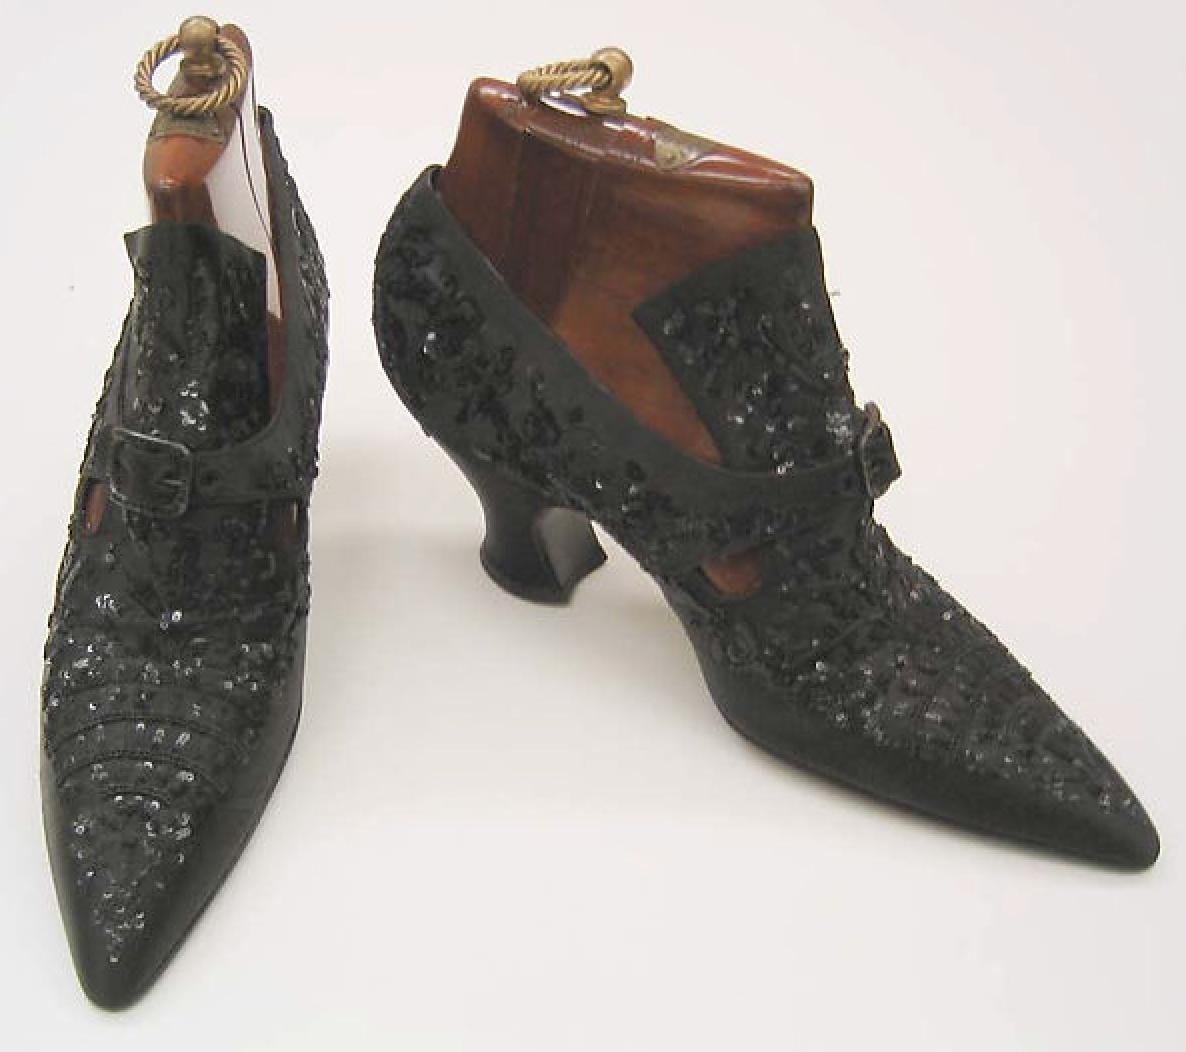 Средневековые туфли. Обувь Барокко 17 век Клюши. Пьетро Янторни обувь. Обувь викторианской эпохи 19 век. Обувь эдвардианской эпохи.